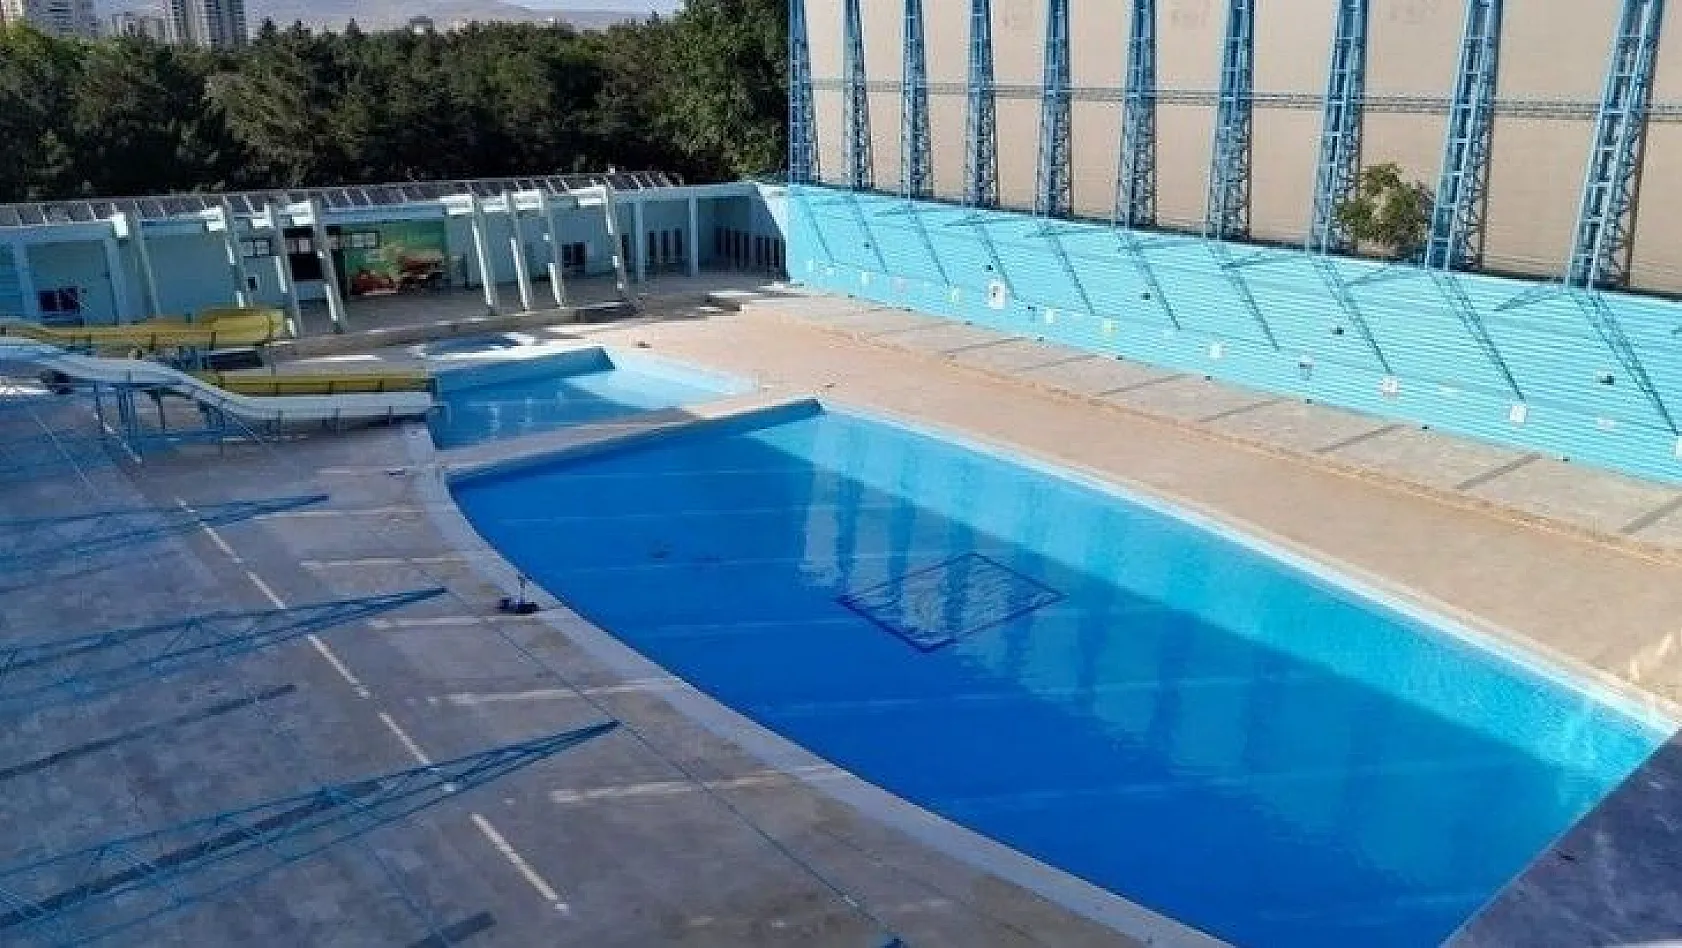 Sümer Yüzme Havuzu hizmete açıldı